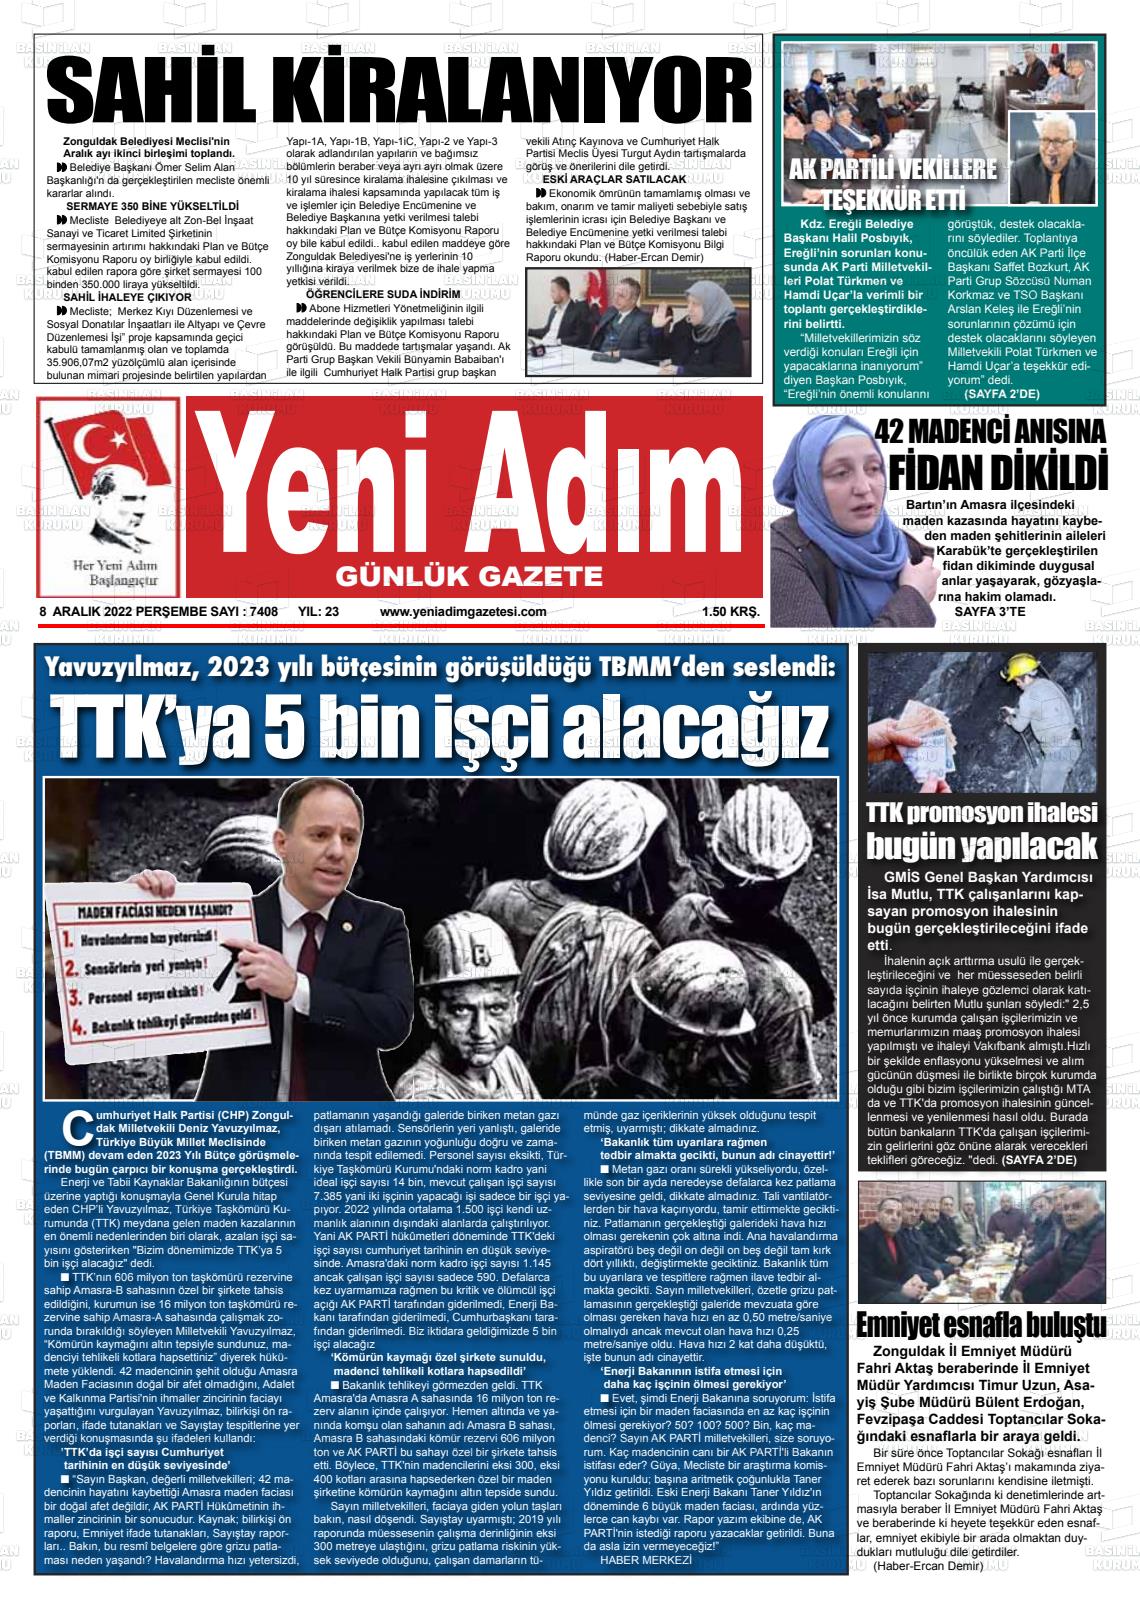 08 Aralık 2022 Yeni Adım Gazete Manşeti